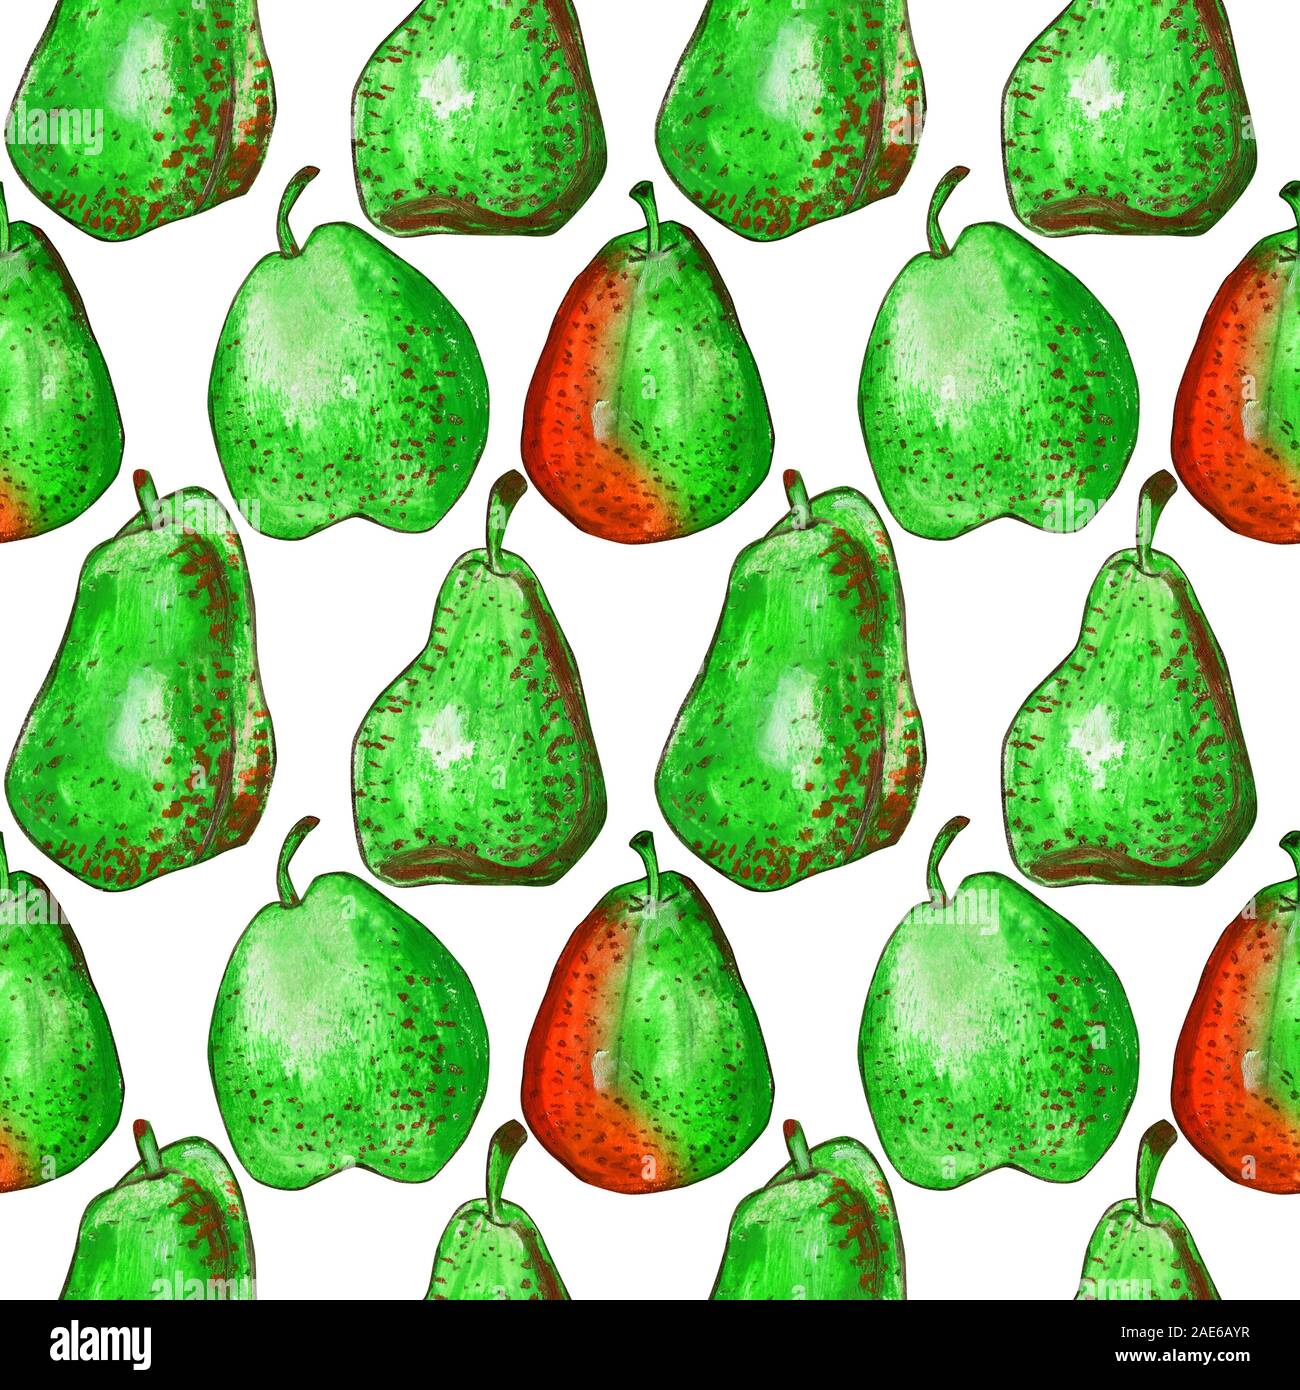 Patrón sin fisuras con peras sobre un fondo blanco. Naranja y fruta verde en la mancha. Ilustración dibujado a mano de pastel de aceite para el diseño de las etiquetas de los alimentos Foto de stock